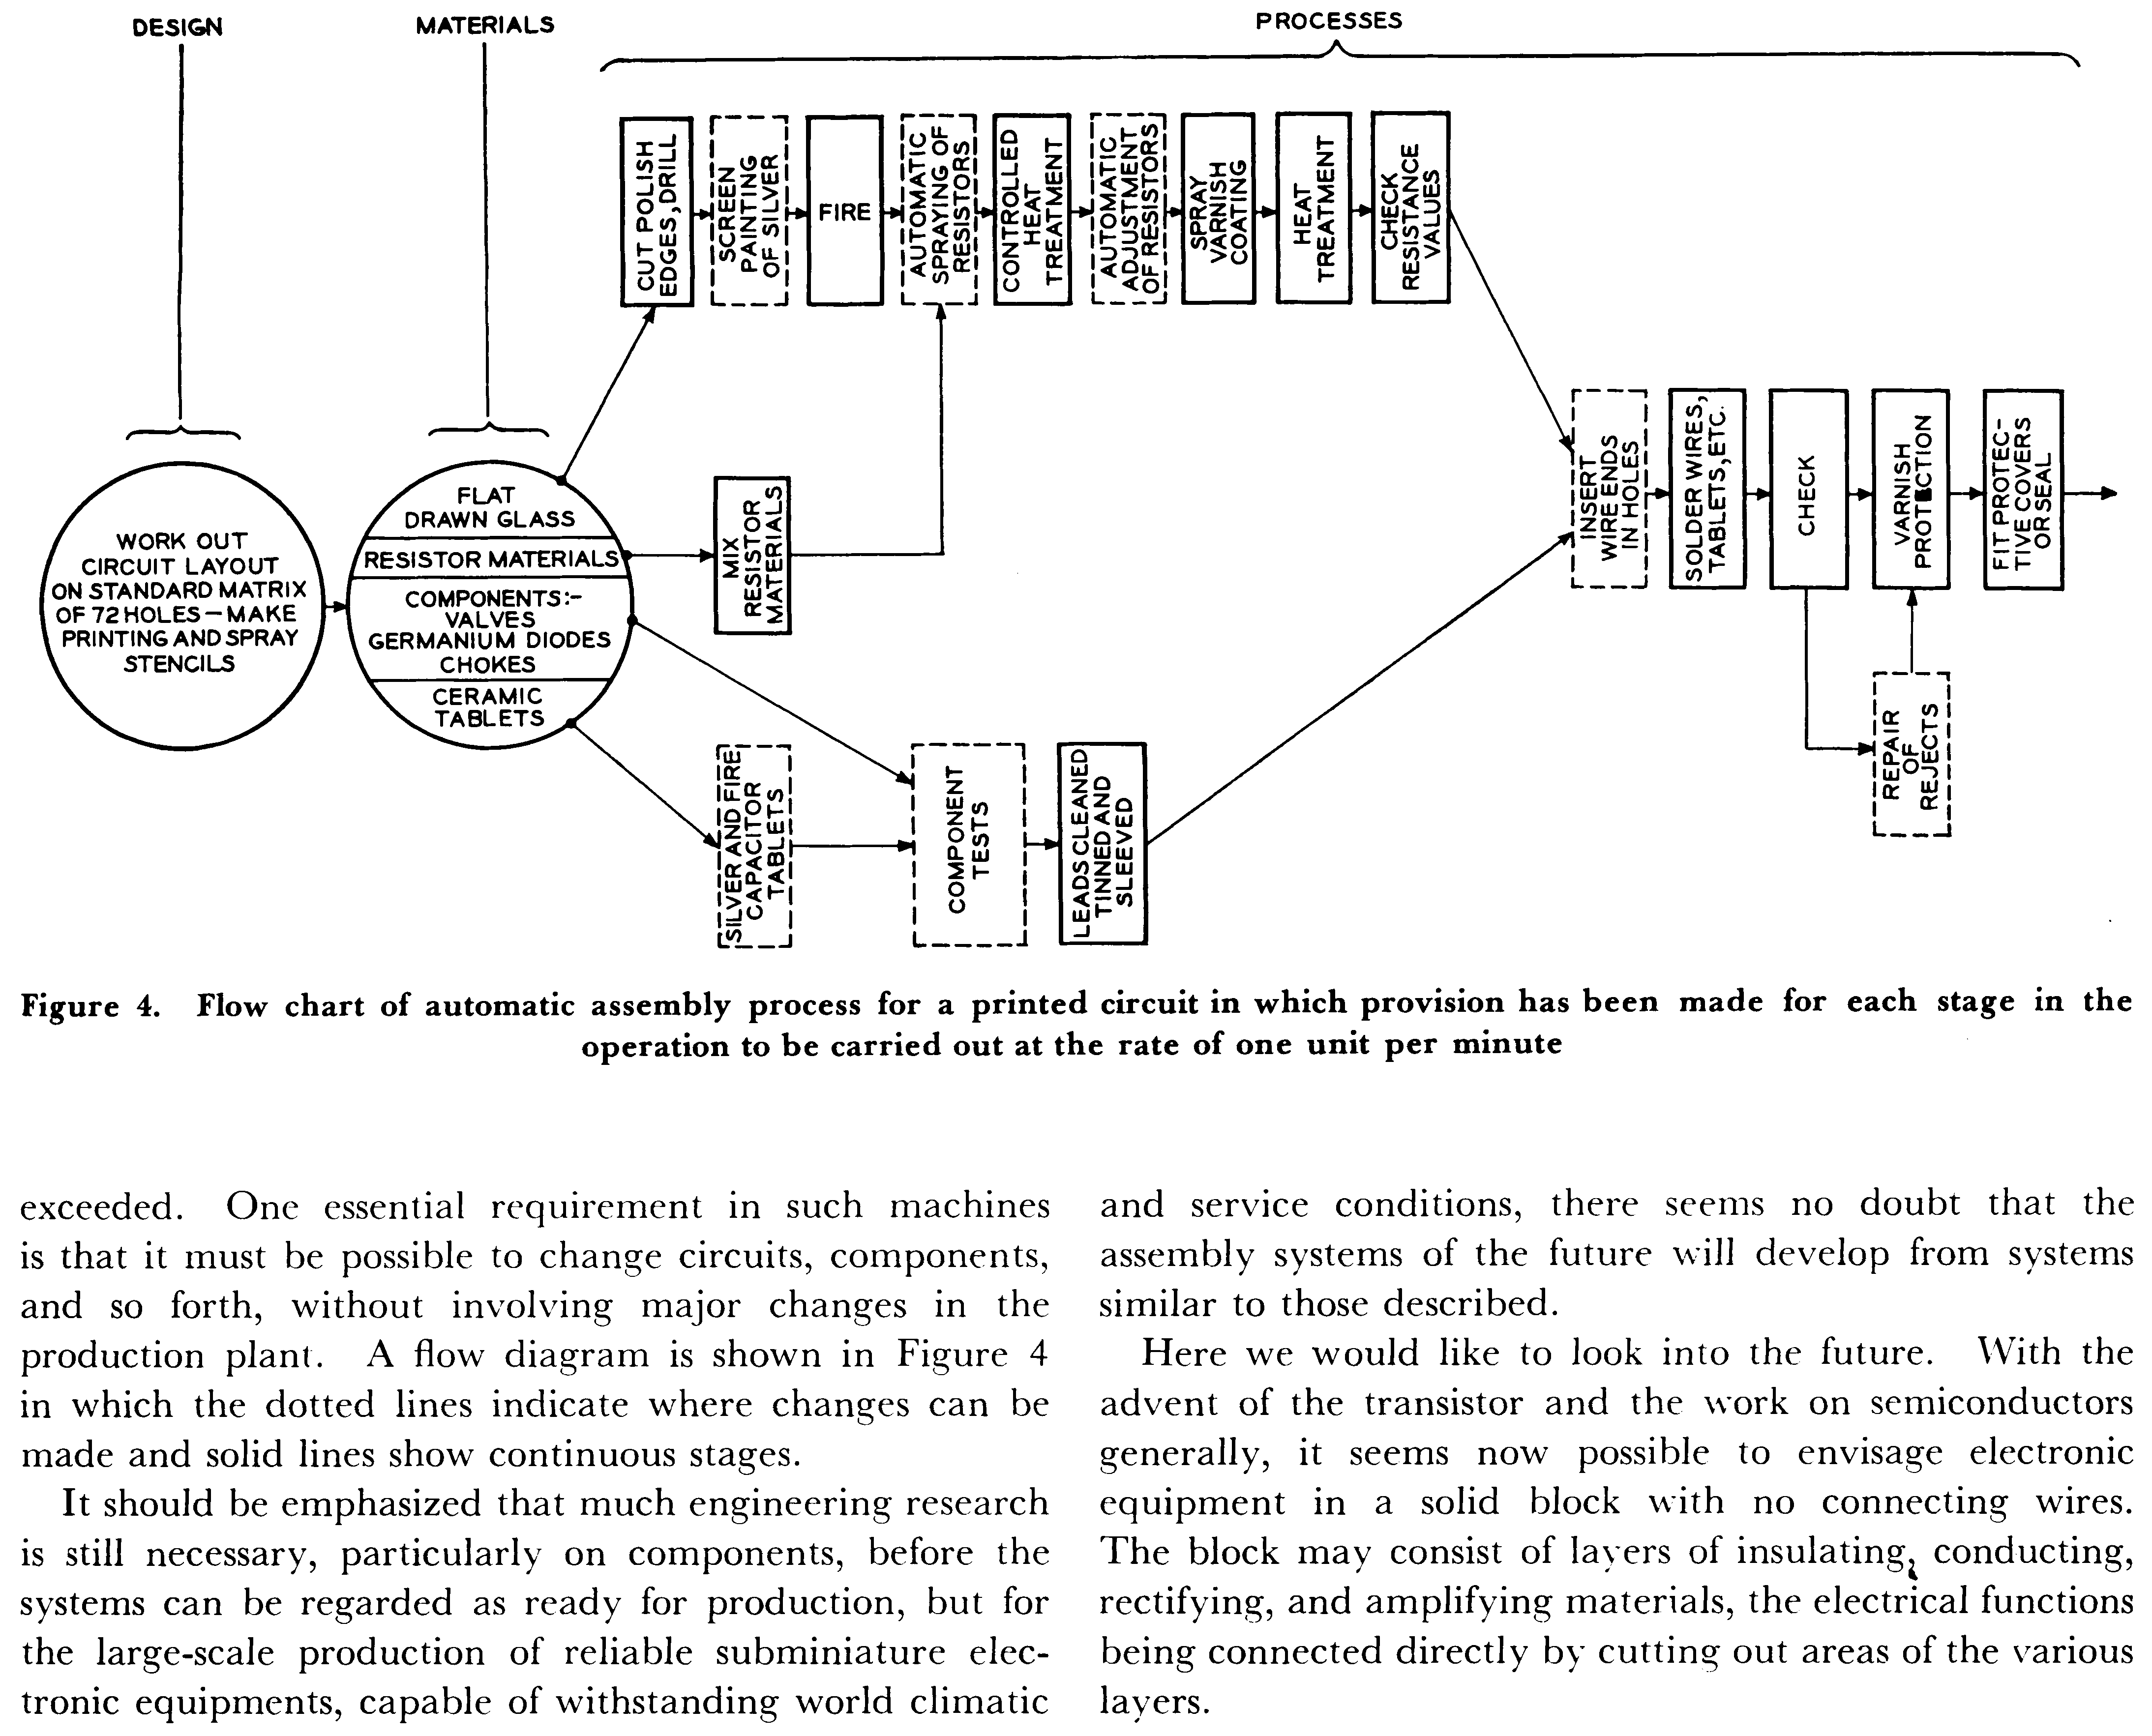 Dummer 1953 集成电路概念截图 第 169 页上半页.png